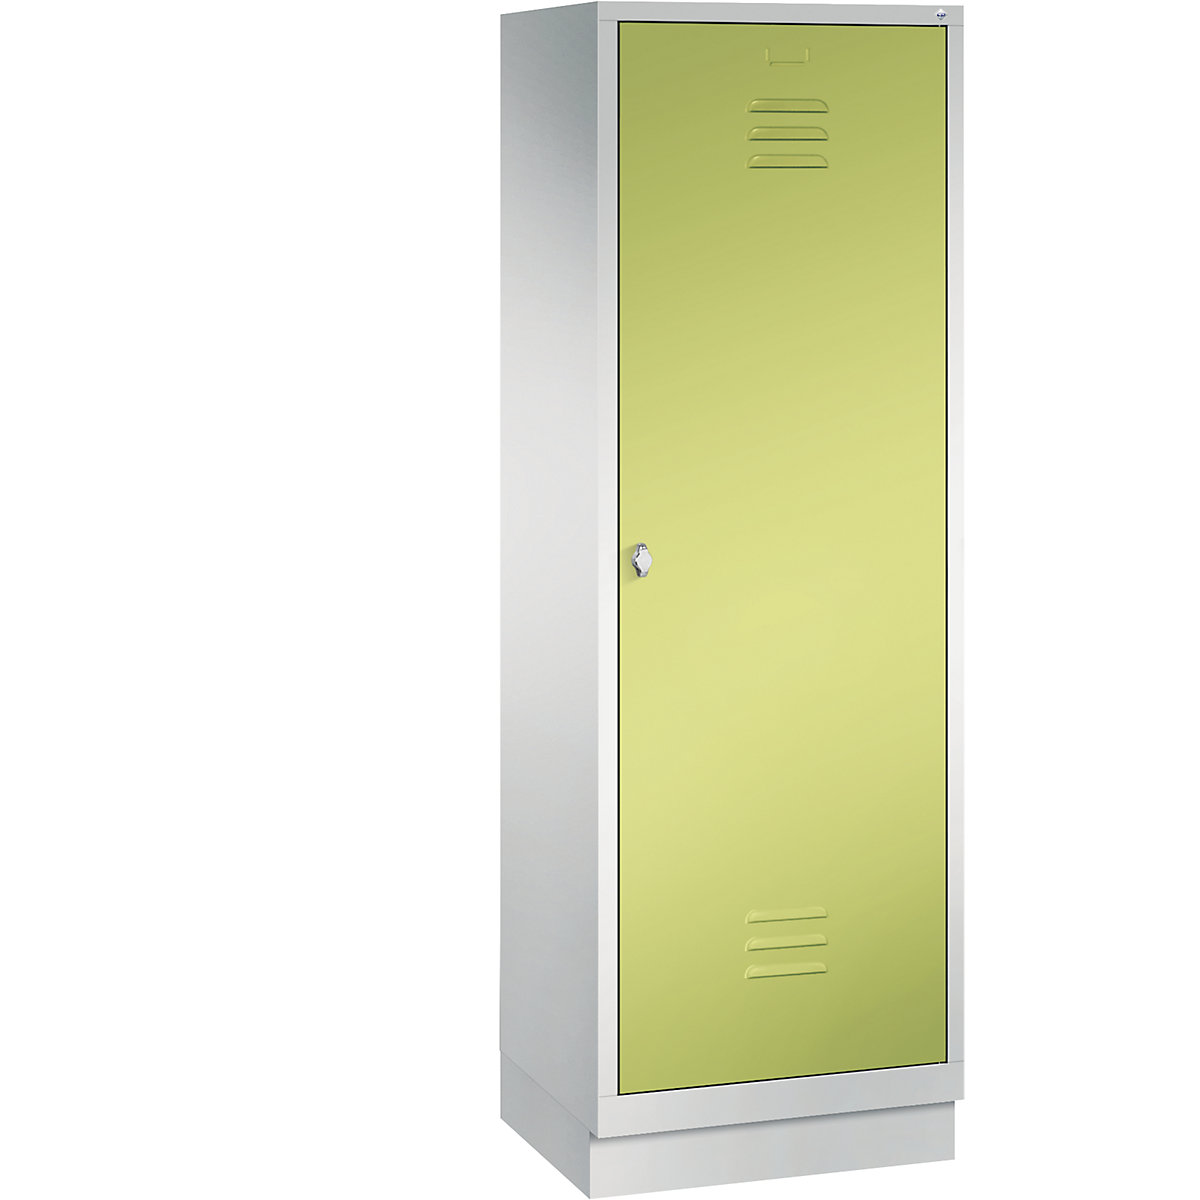 Šatní skříň se soklem CLASSIC s dveřmi přes 2 oddíly – C+P, 2 oddíly, šířka oddílu 300 mm, světlá šedá / viridianová zelená